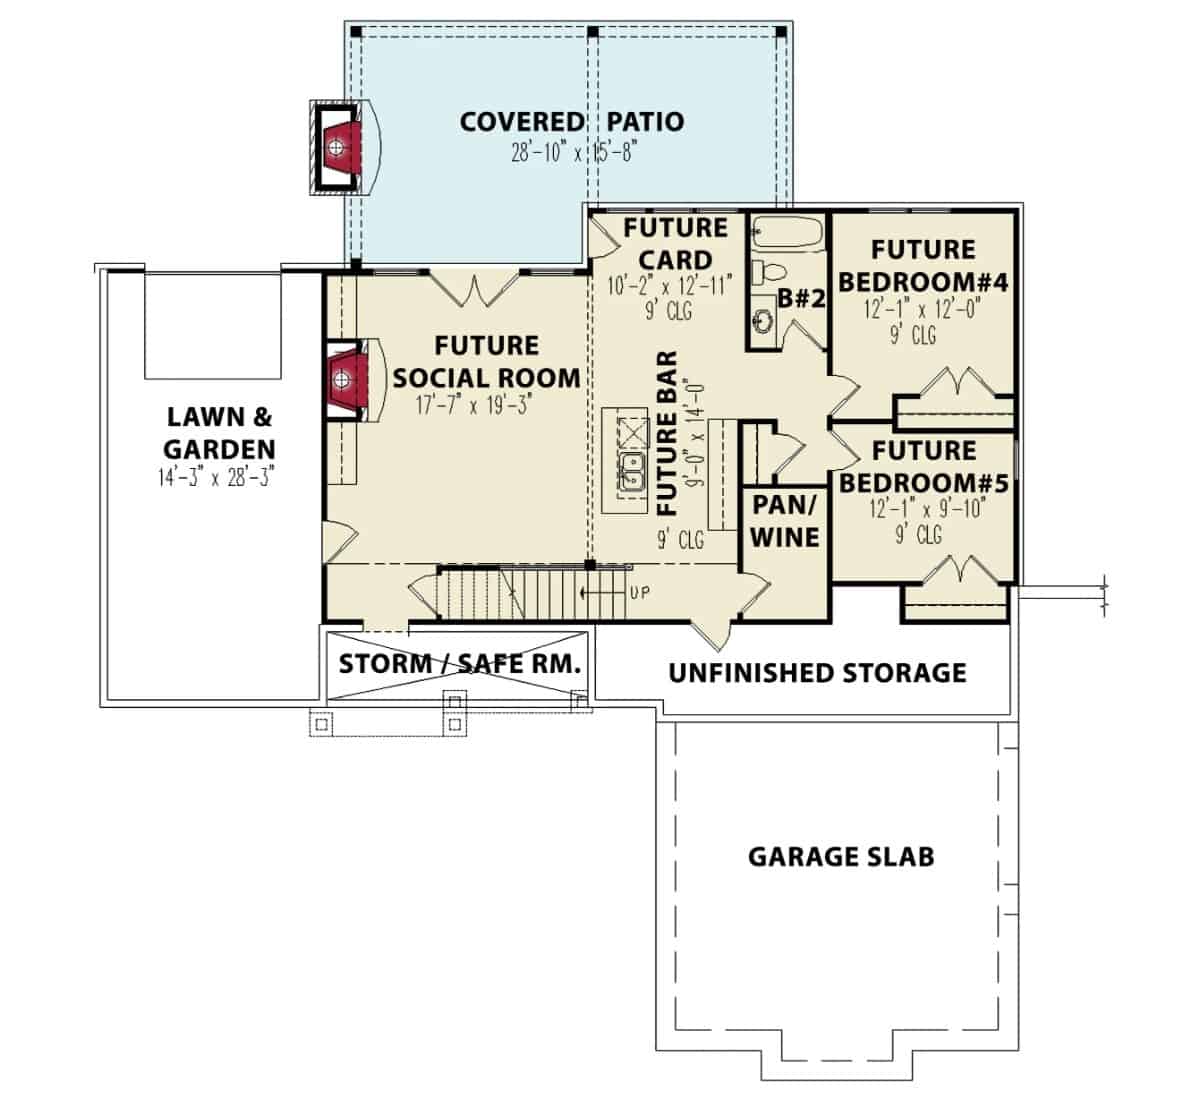 低层平面图有两间卧室和一间带湿酒吧和酒窖的社交室。